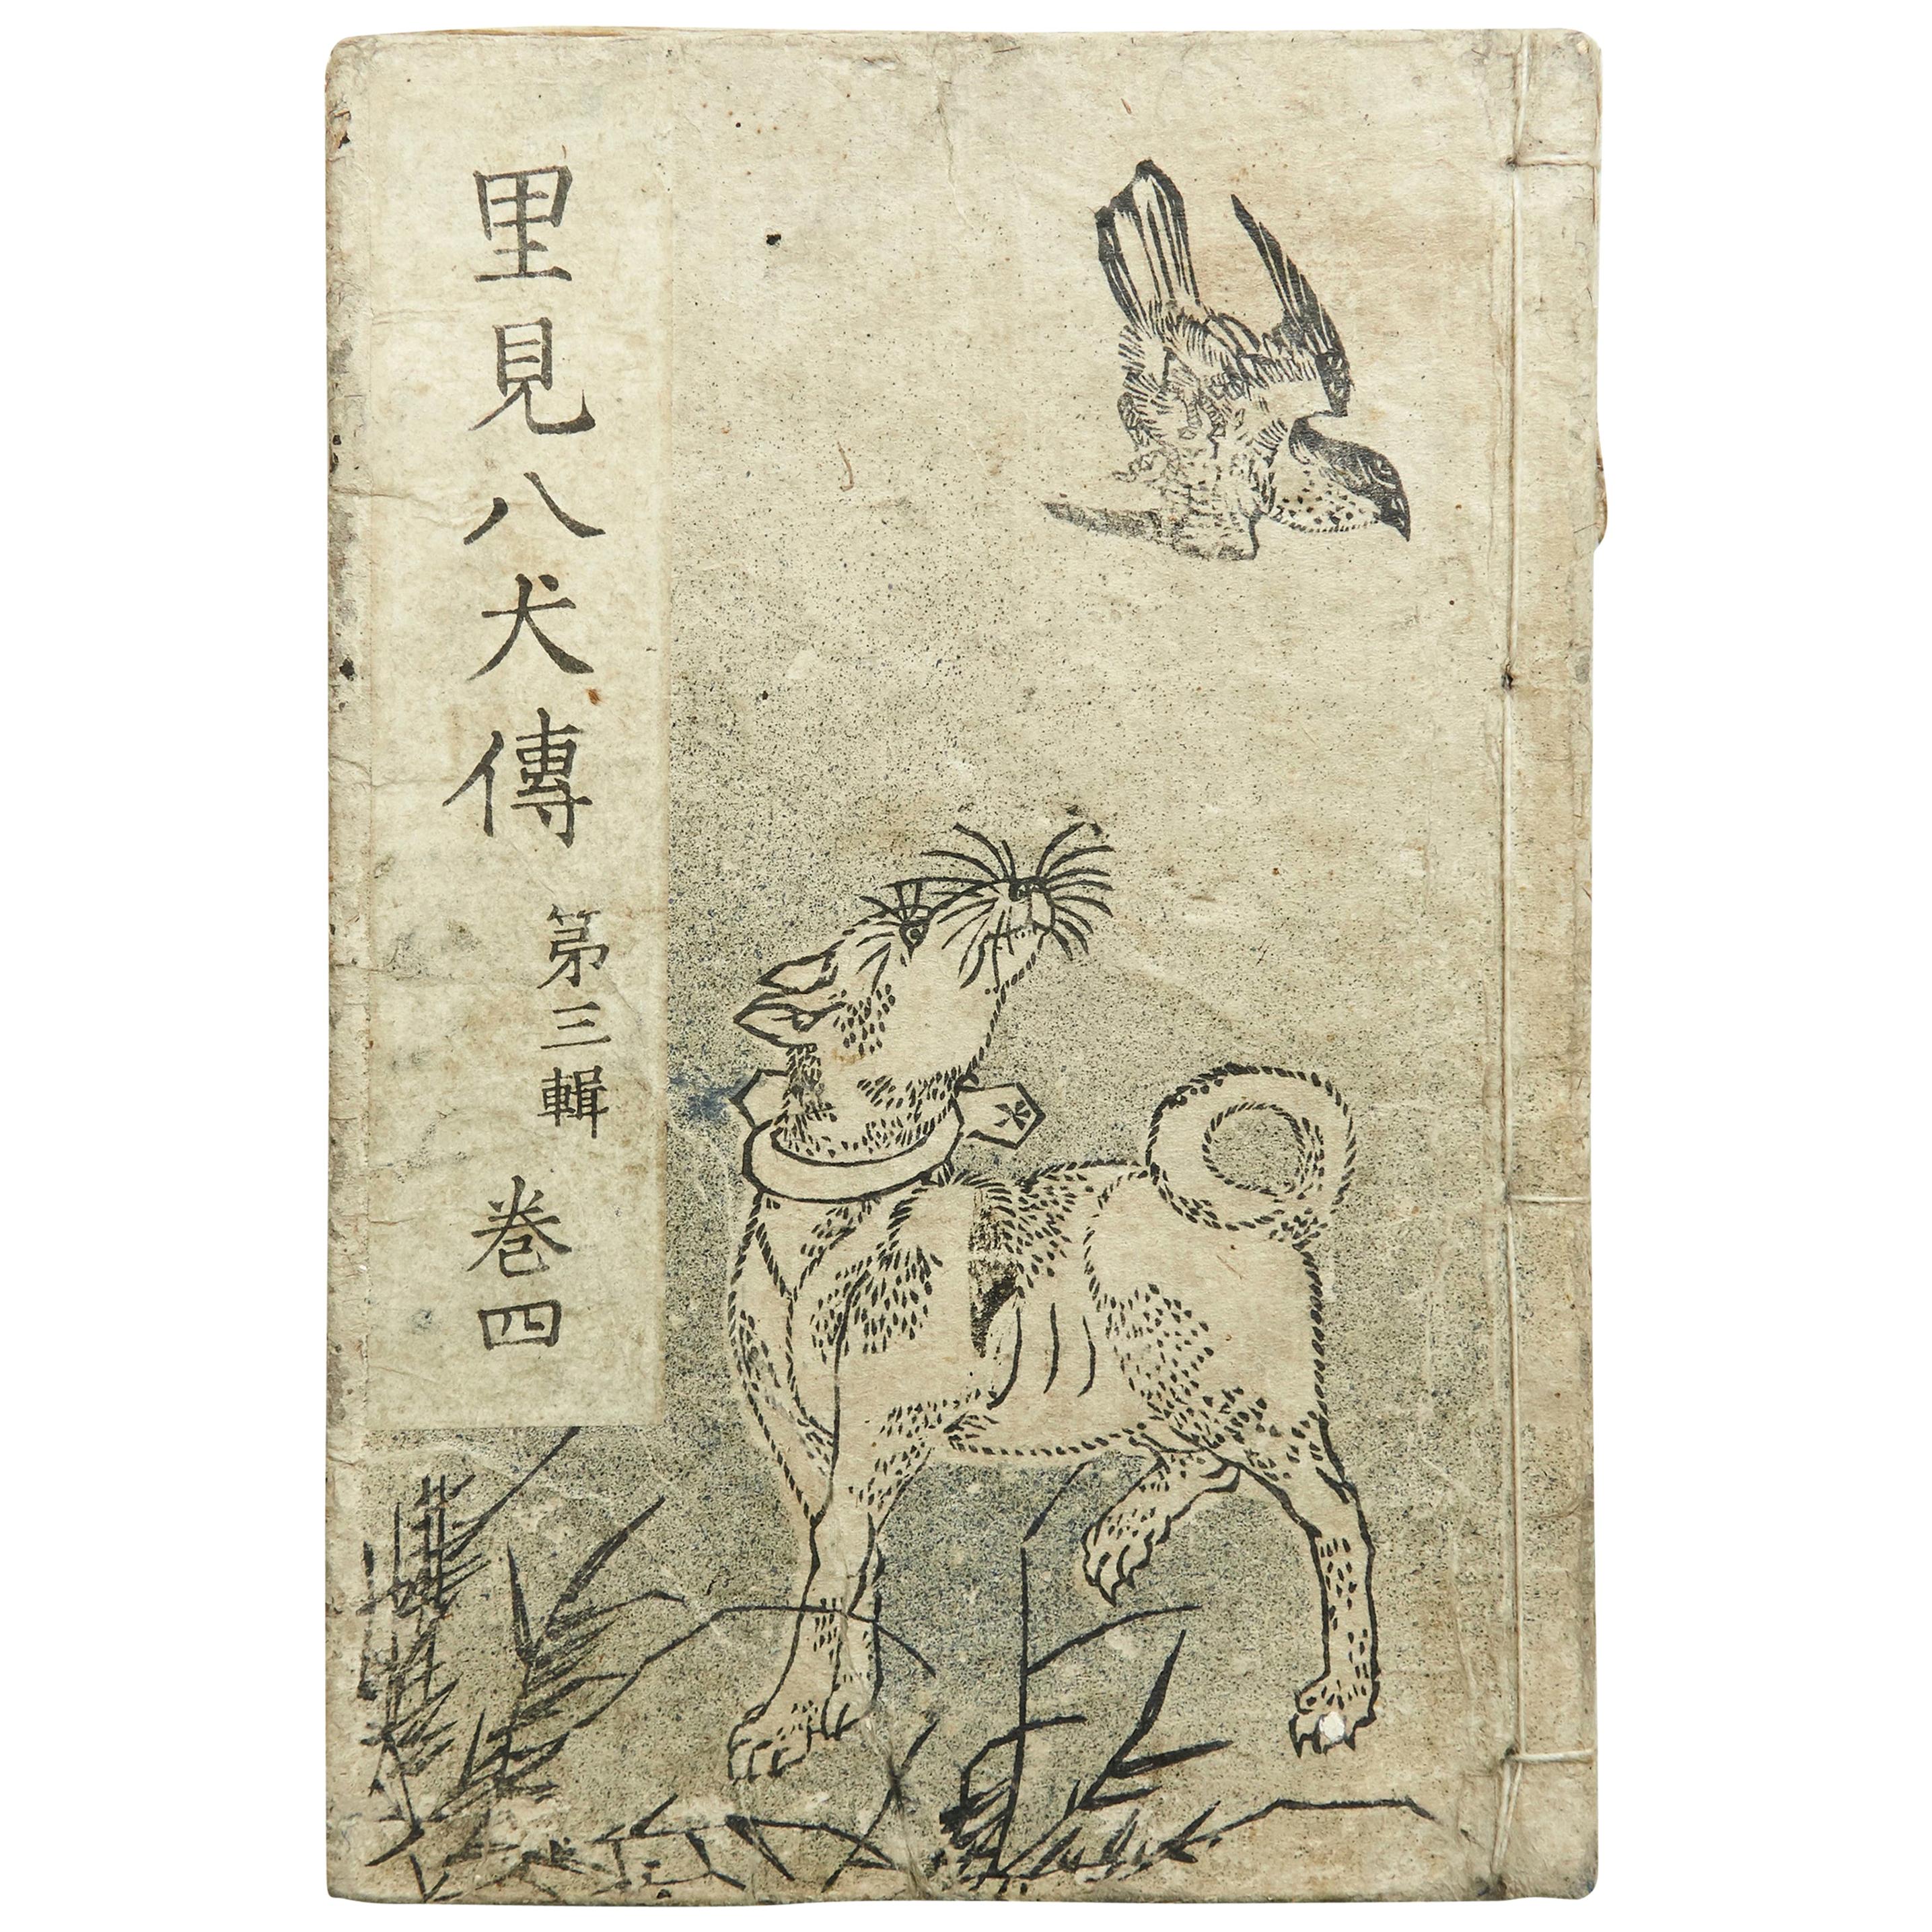 Antique Japanese Epic Novel Book Edo Period, circa 1819